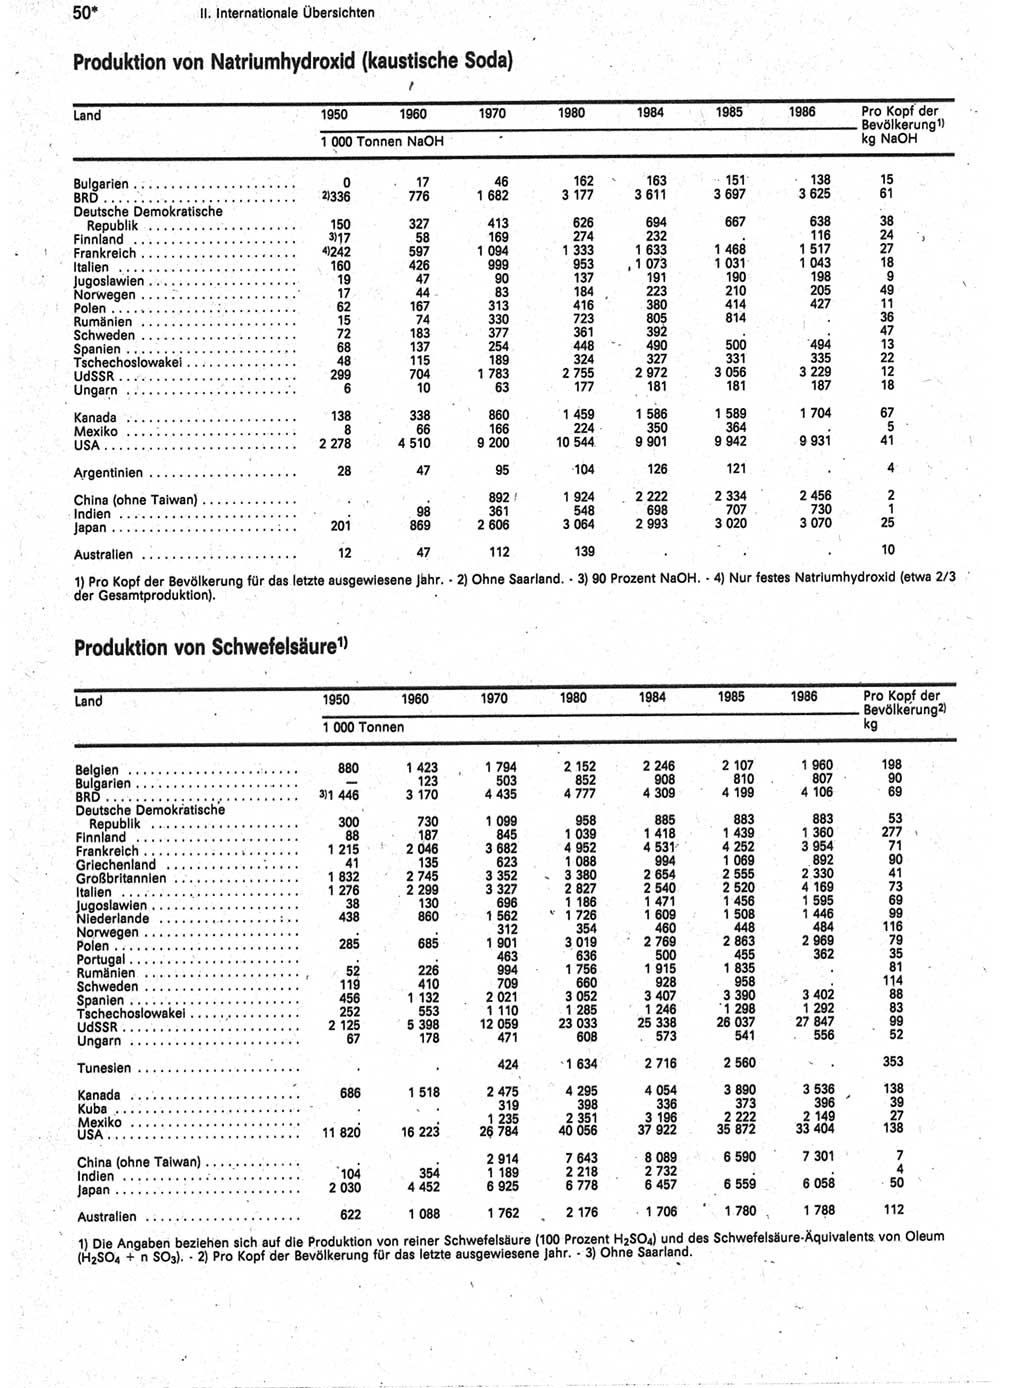 Statistisches Jahrbuch der Deutschen Demokratischen Republik (DDR) 1988, Seite 50 (Stat. Jb. DDR 1988, S. 50)